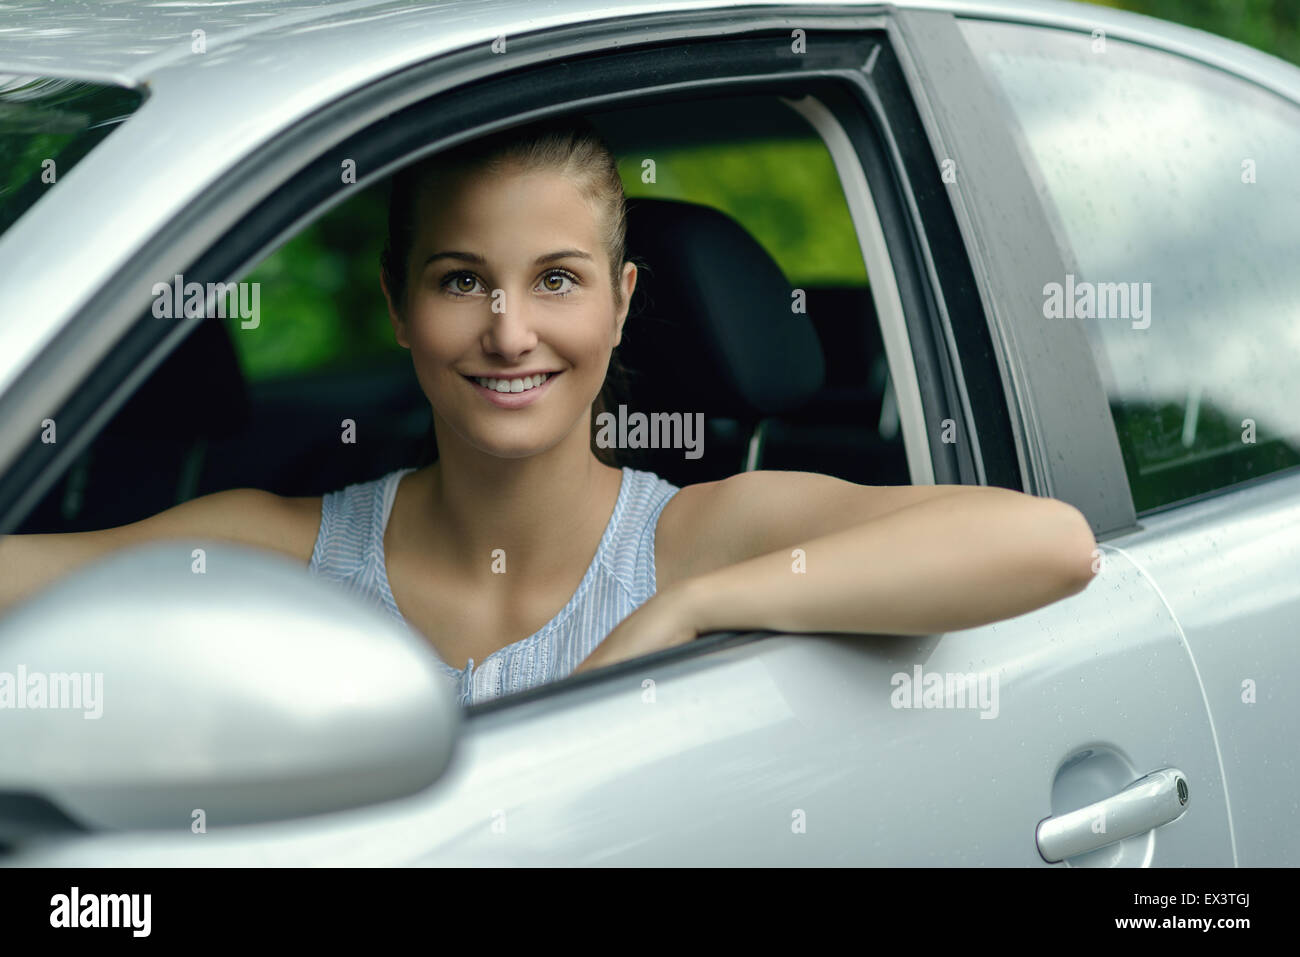 Attraktive junge Frau, die ein Auto aus ihrer offenen Seitenfenster in die Kamera schaut, mit einem warmen freundlichen Lächeln Lächeln Stockfoto